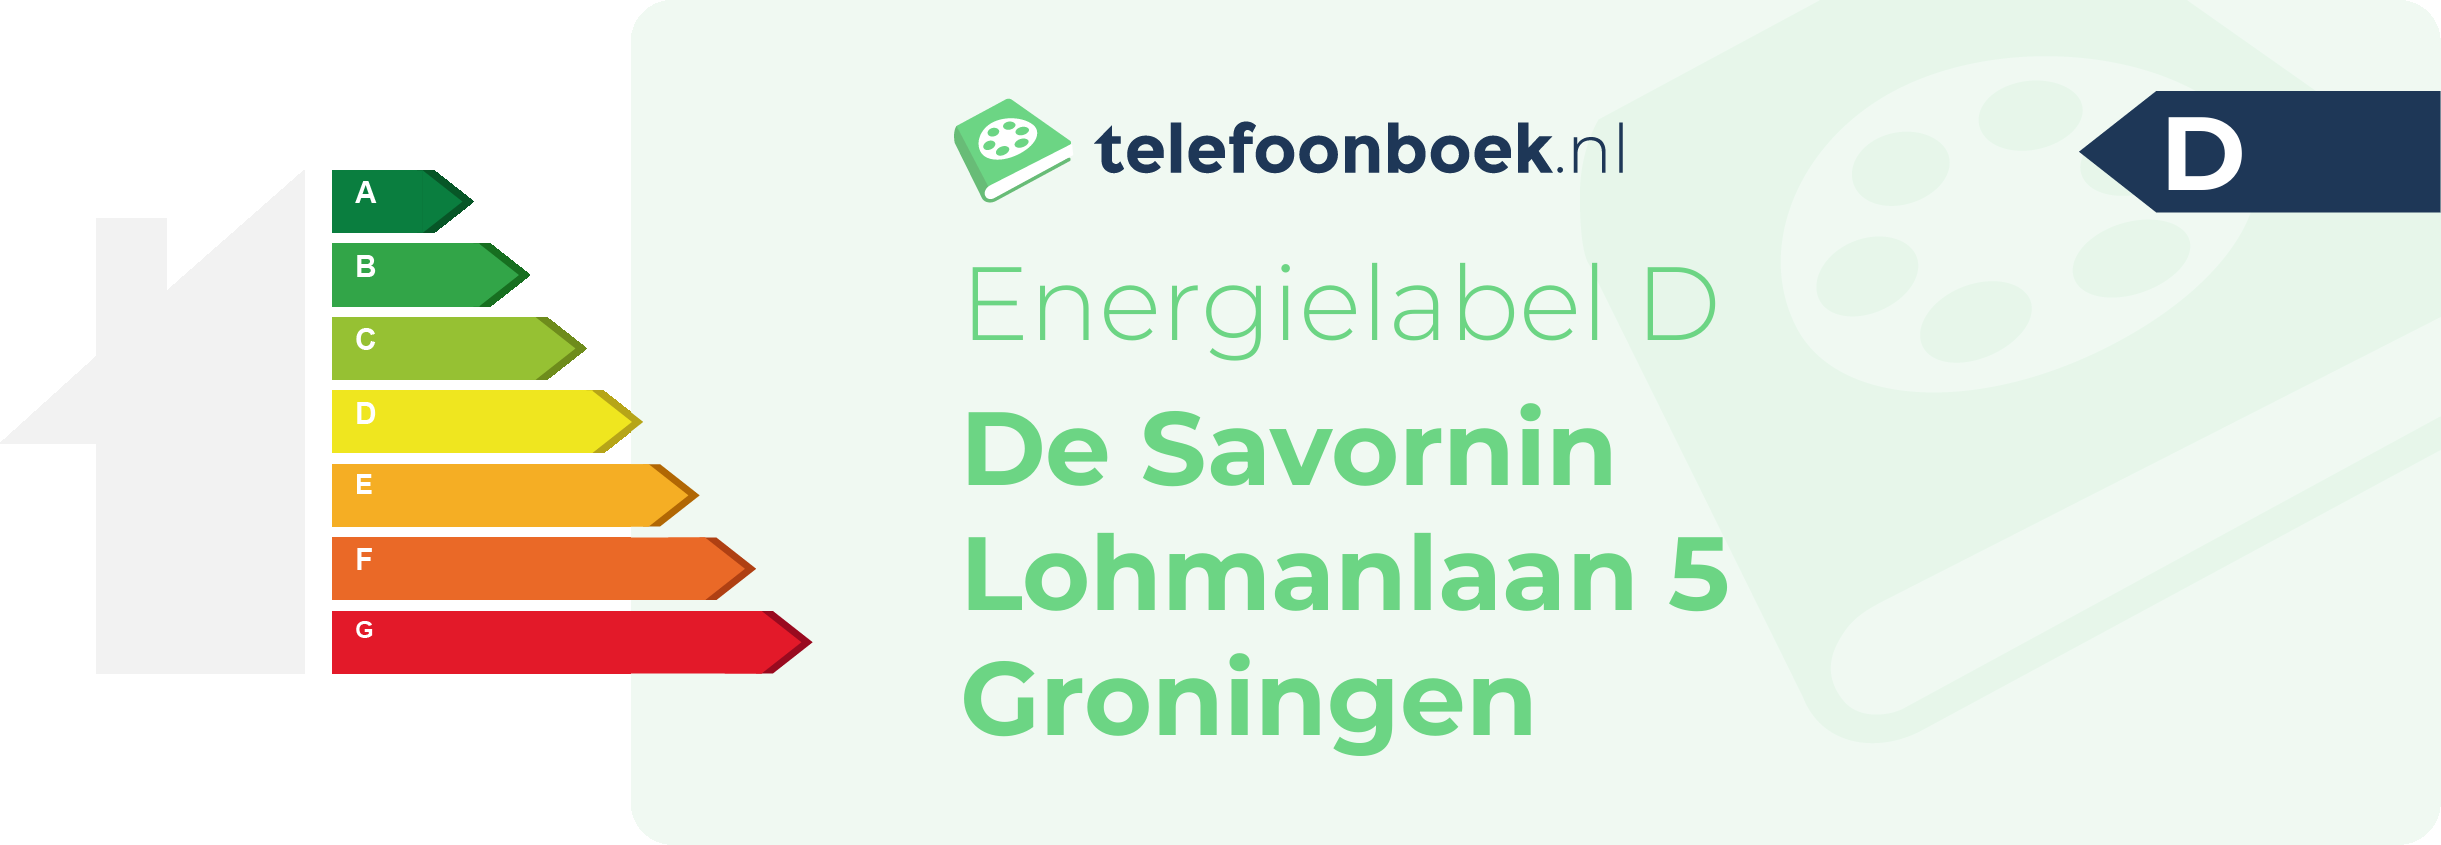 Energielabel De Savornin Lohmanlaan 5 Groningen